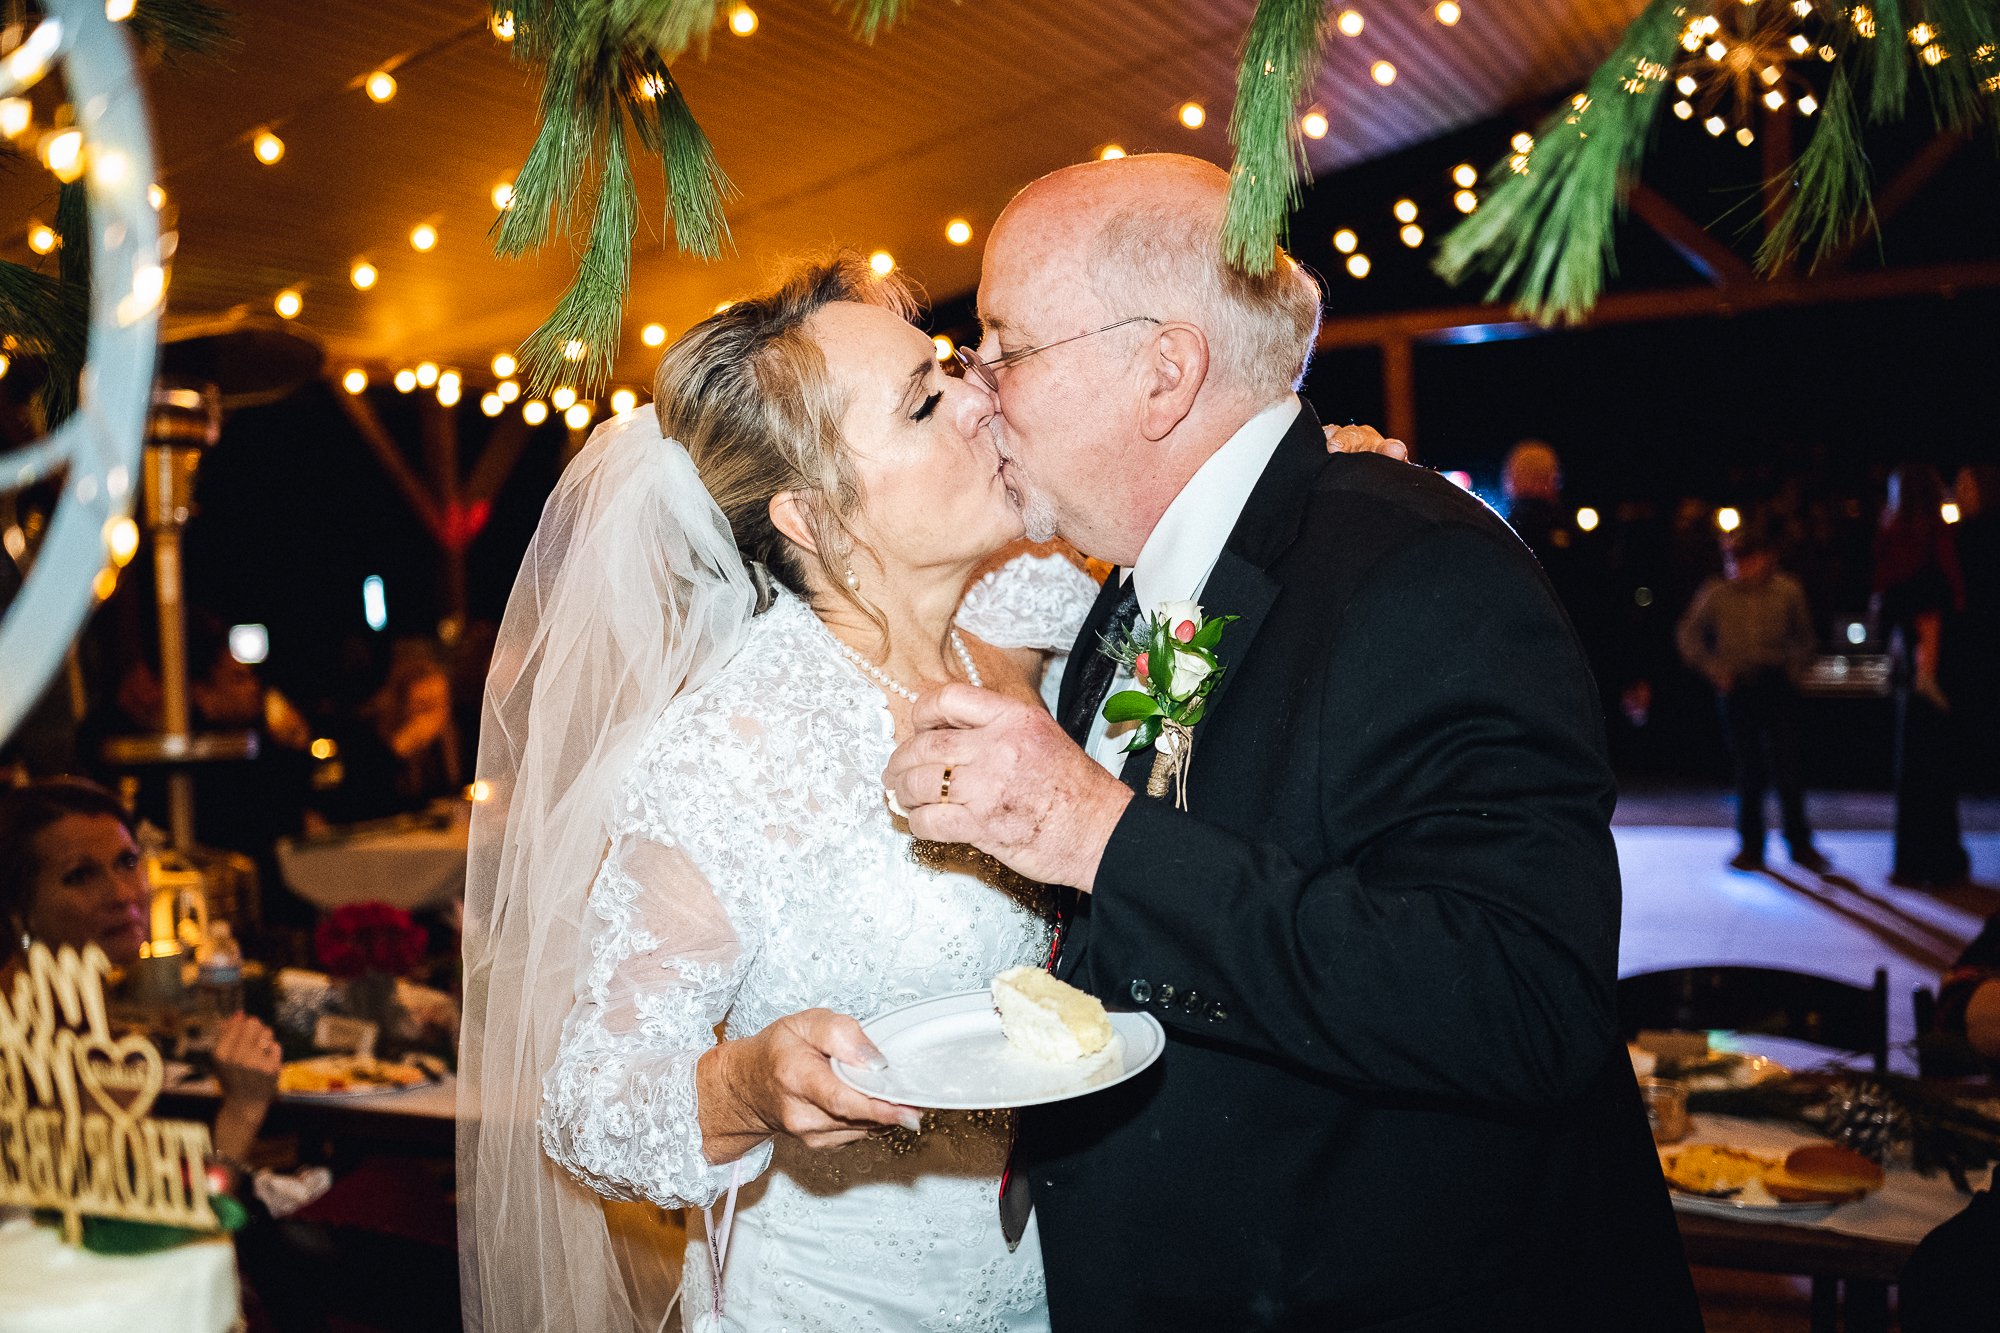 Kiss at the cake during reception at Nantahala Weddings and Events